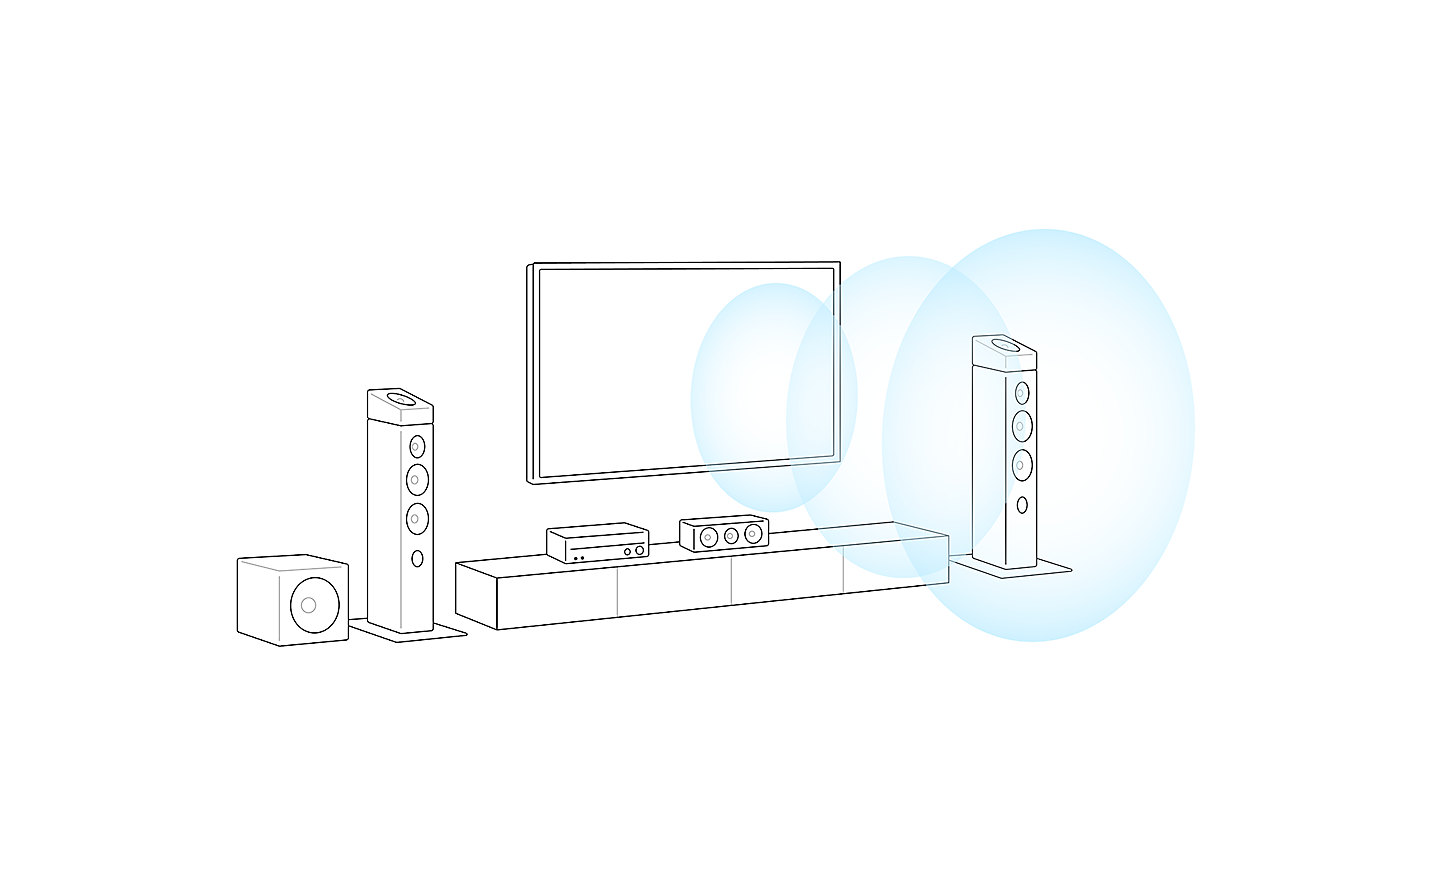 Billede af omrids af en TV-opstilling. Tre blå cirkler kommer ud af TV'ets midte og angiver lydens retning